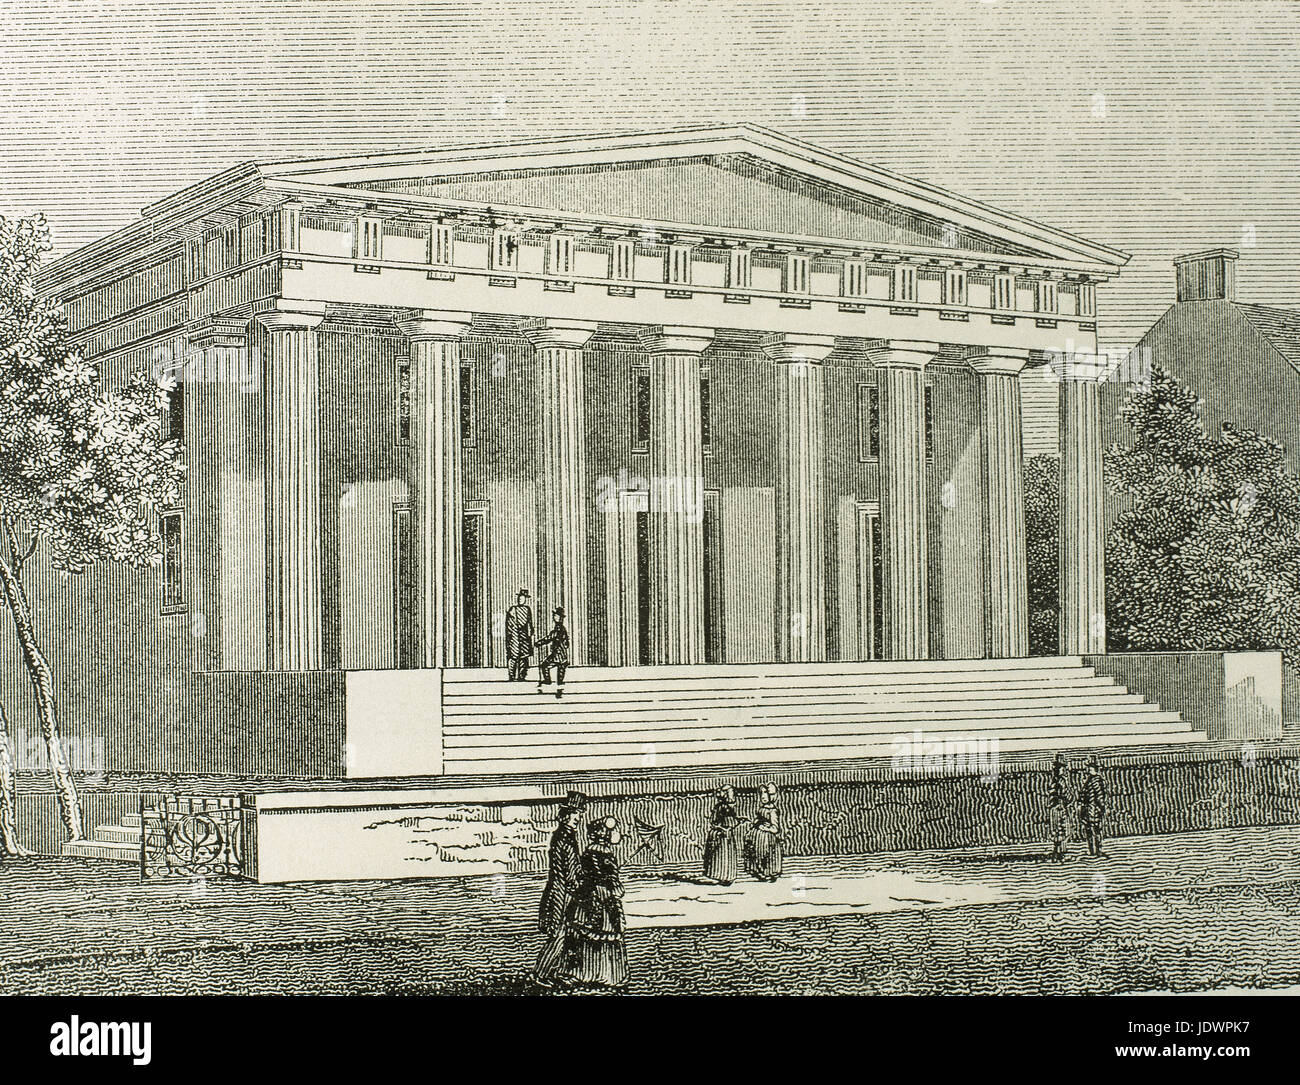 Stati Uniti. Philadelphia. In Pennsylvania. La seconda banca degli Stati Uniti, costruito tra il 1818-1824 dall'architetto americano William Strickland (1788-1854). Incisione. Foto Stock